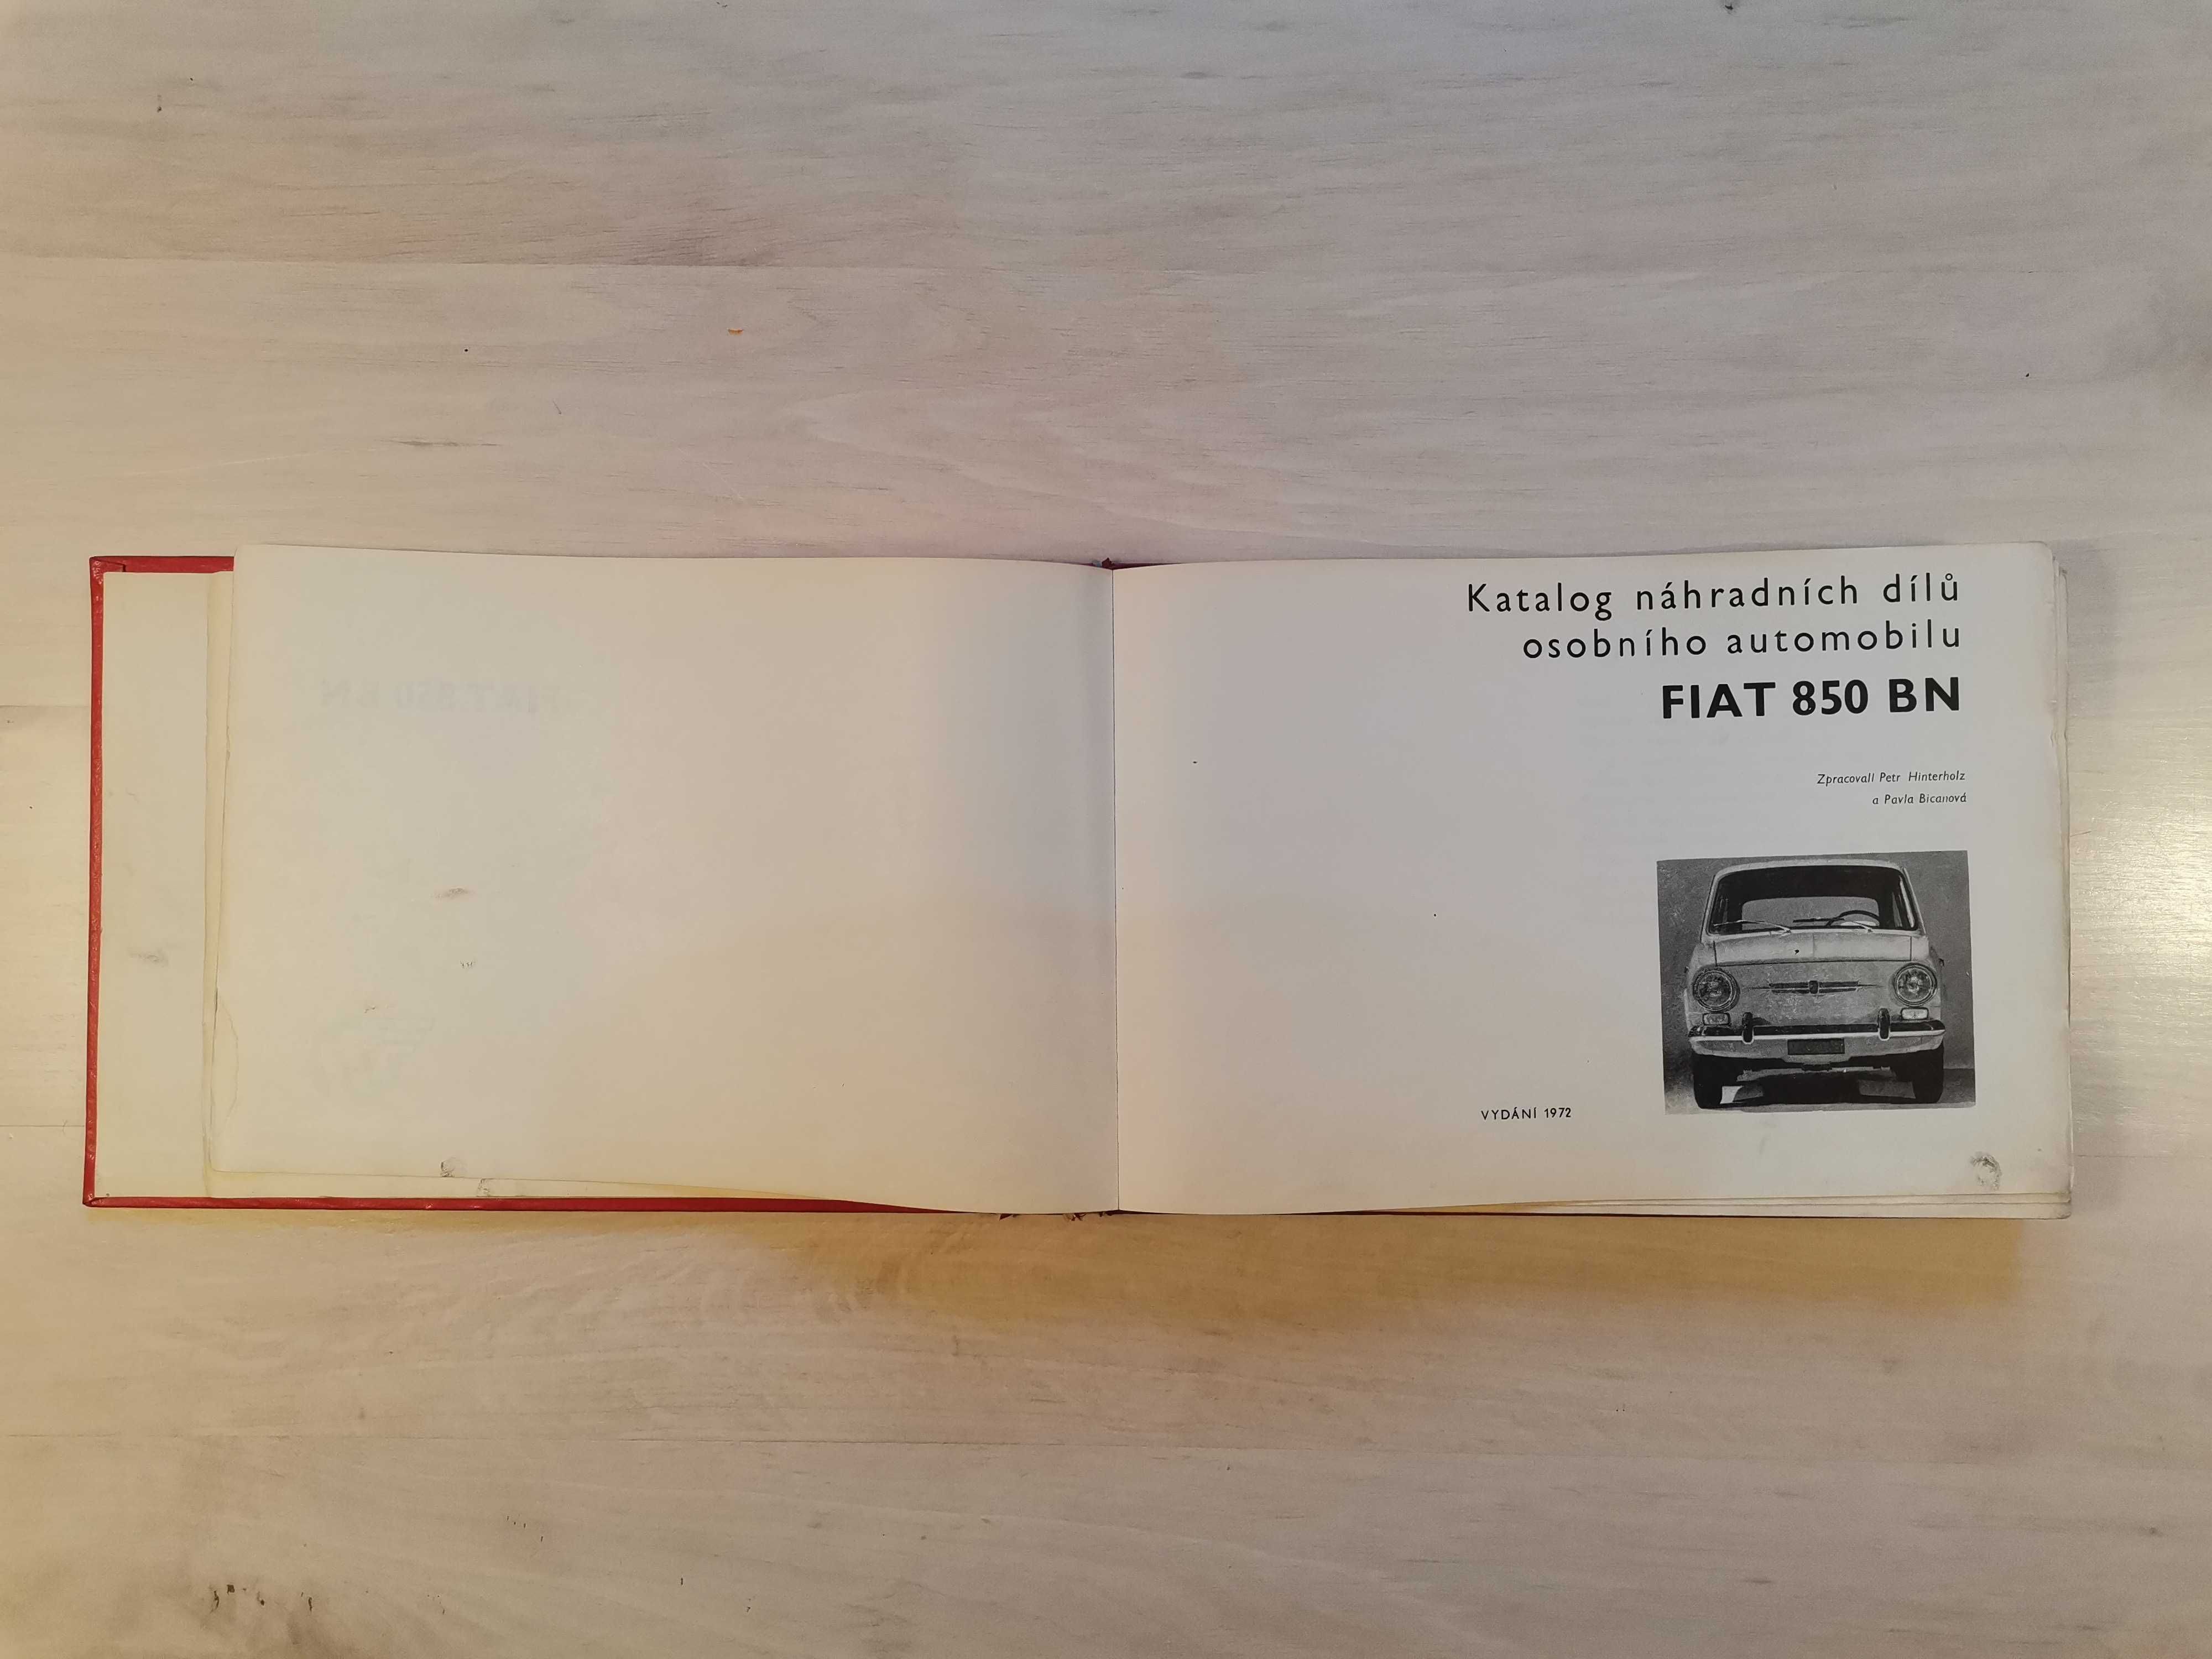 Katalog części zamiennych Fiat 850 BN + GRATIS